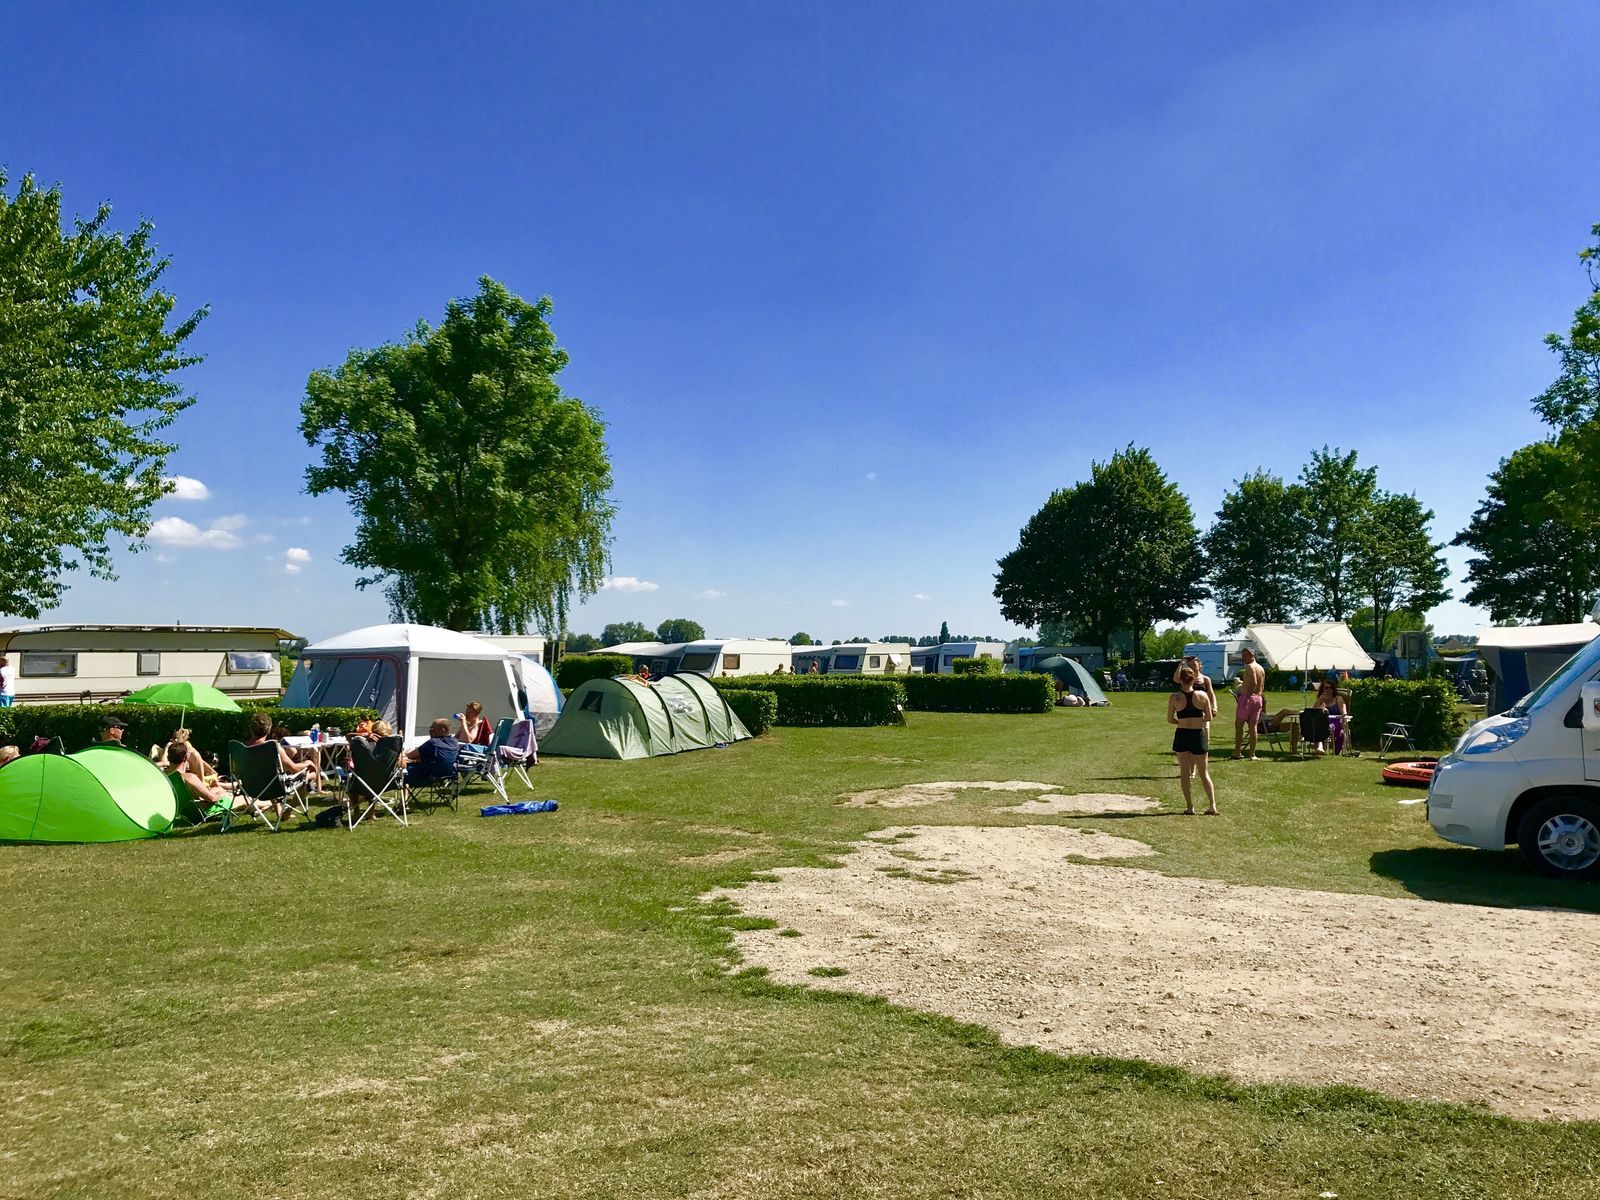 Camping-Stellplatz auf dem saisonalen Feld am äußeren Ring